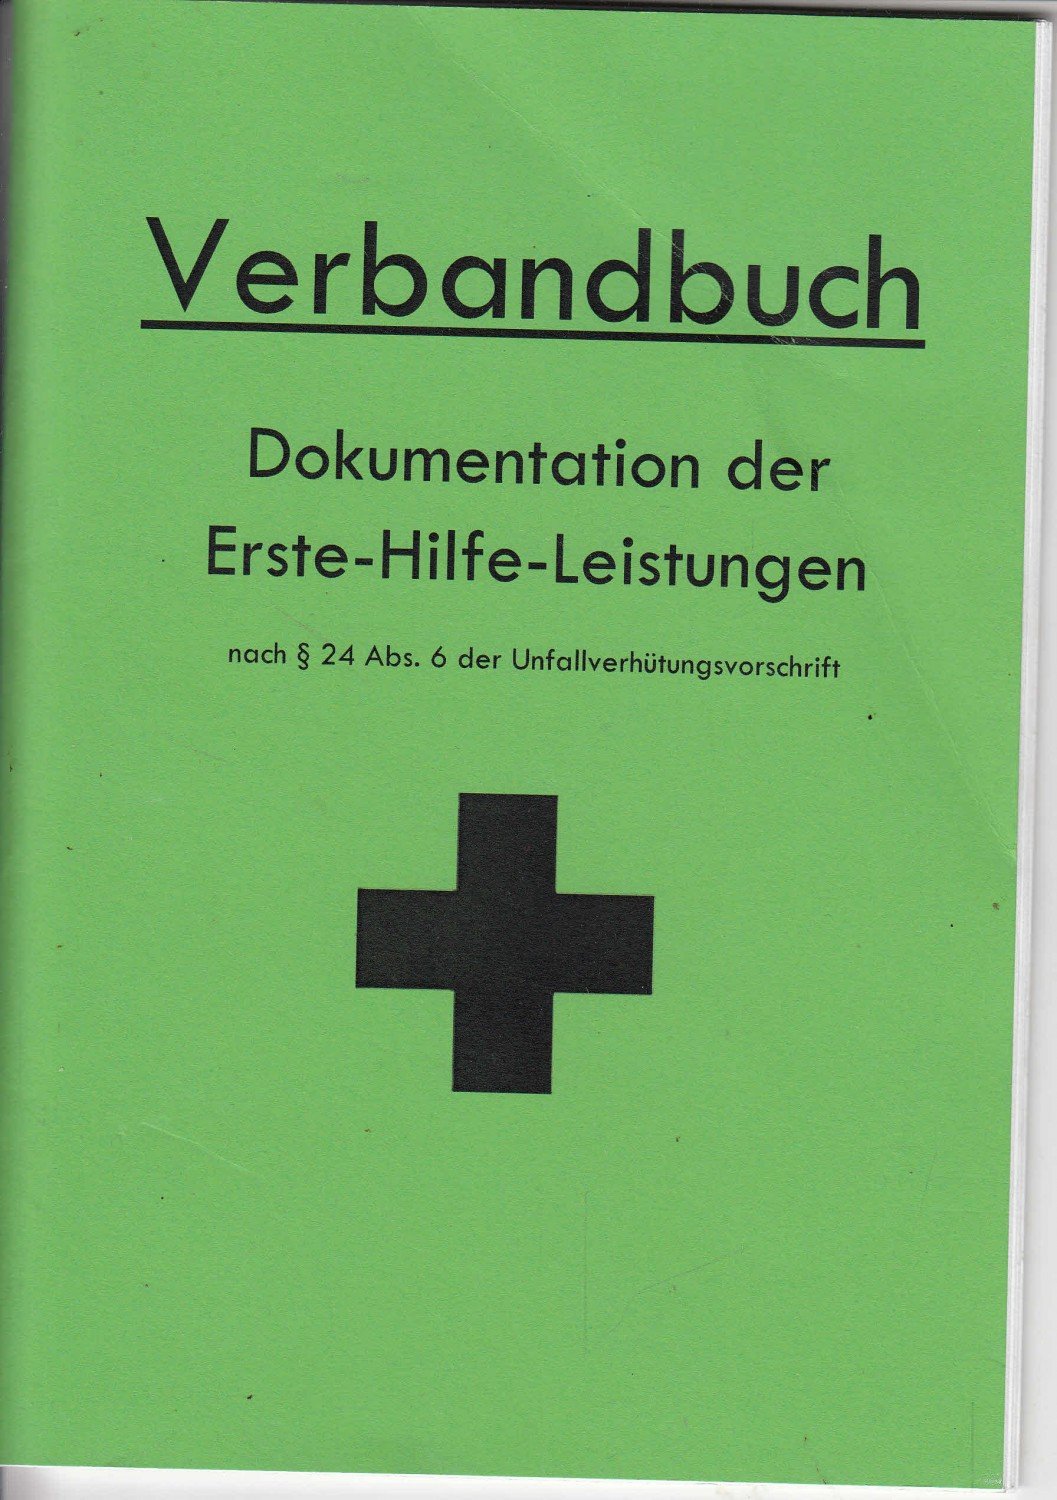 Verbandbuch - Dokumentation der Erste-Hilfe-Leistungen …“ – Buch gebraucht  kaufen – A02i8TxZ01ZZK